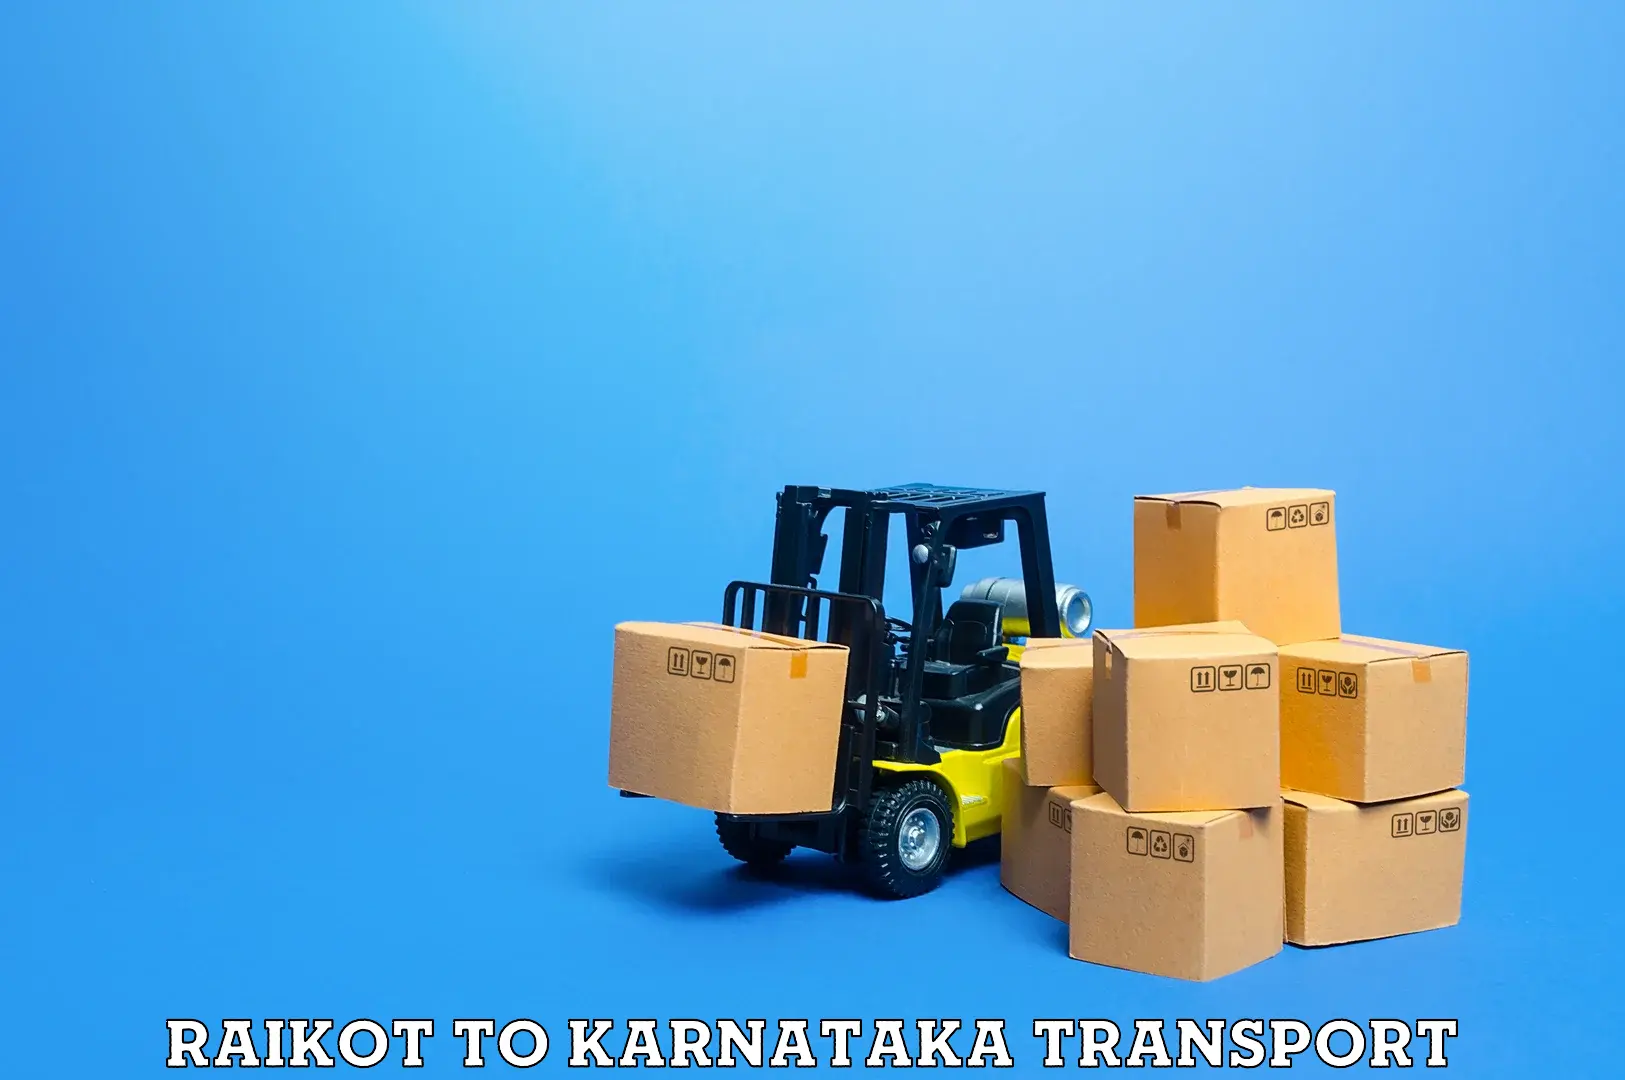 Furniture transport service Raikot to Gokak